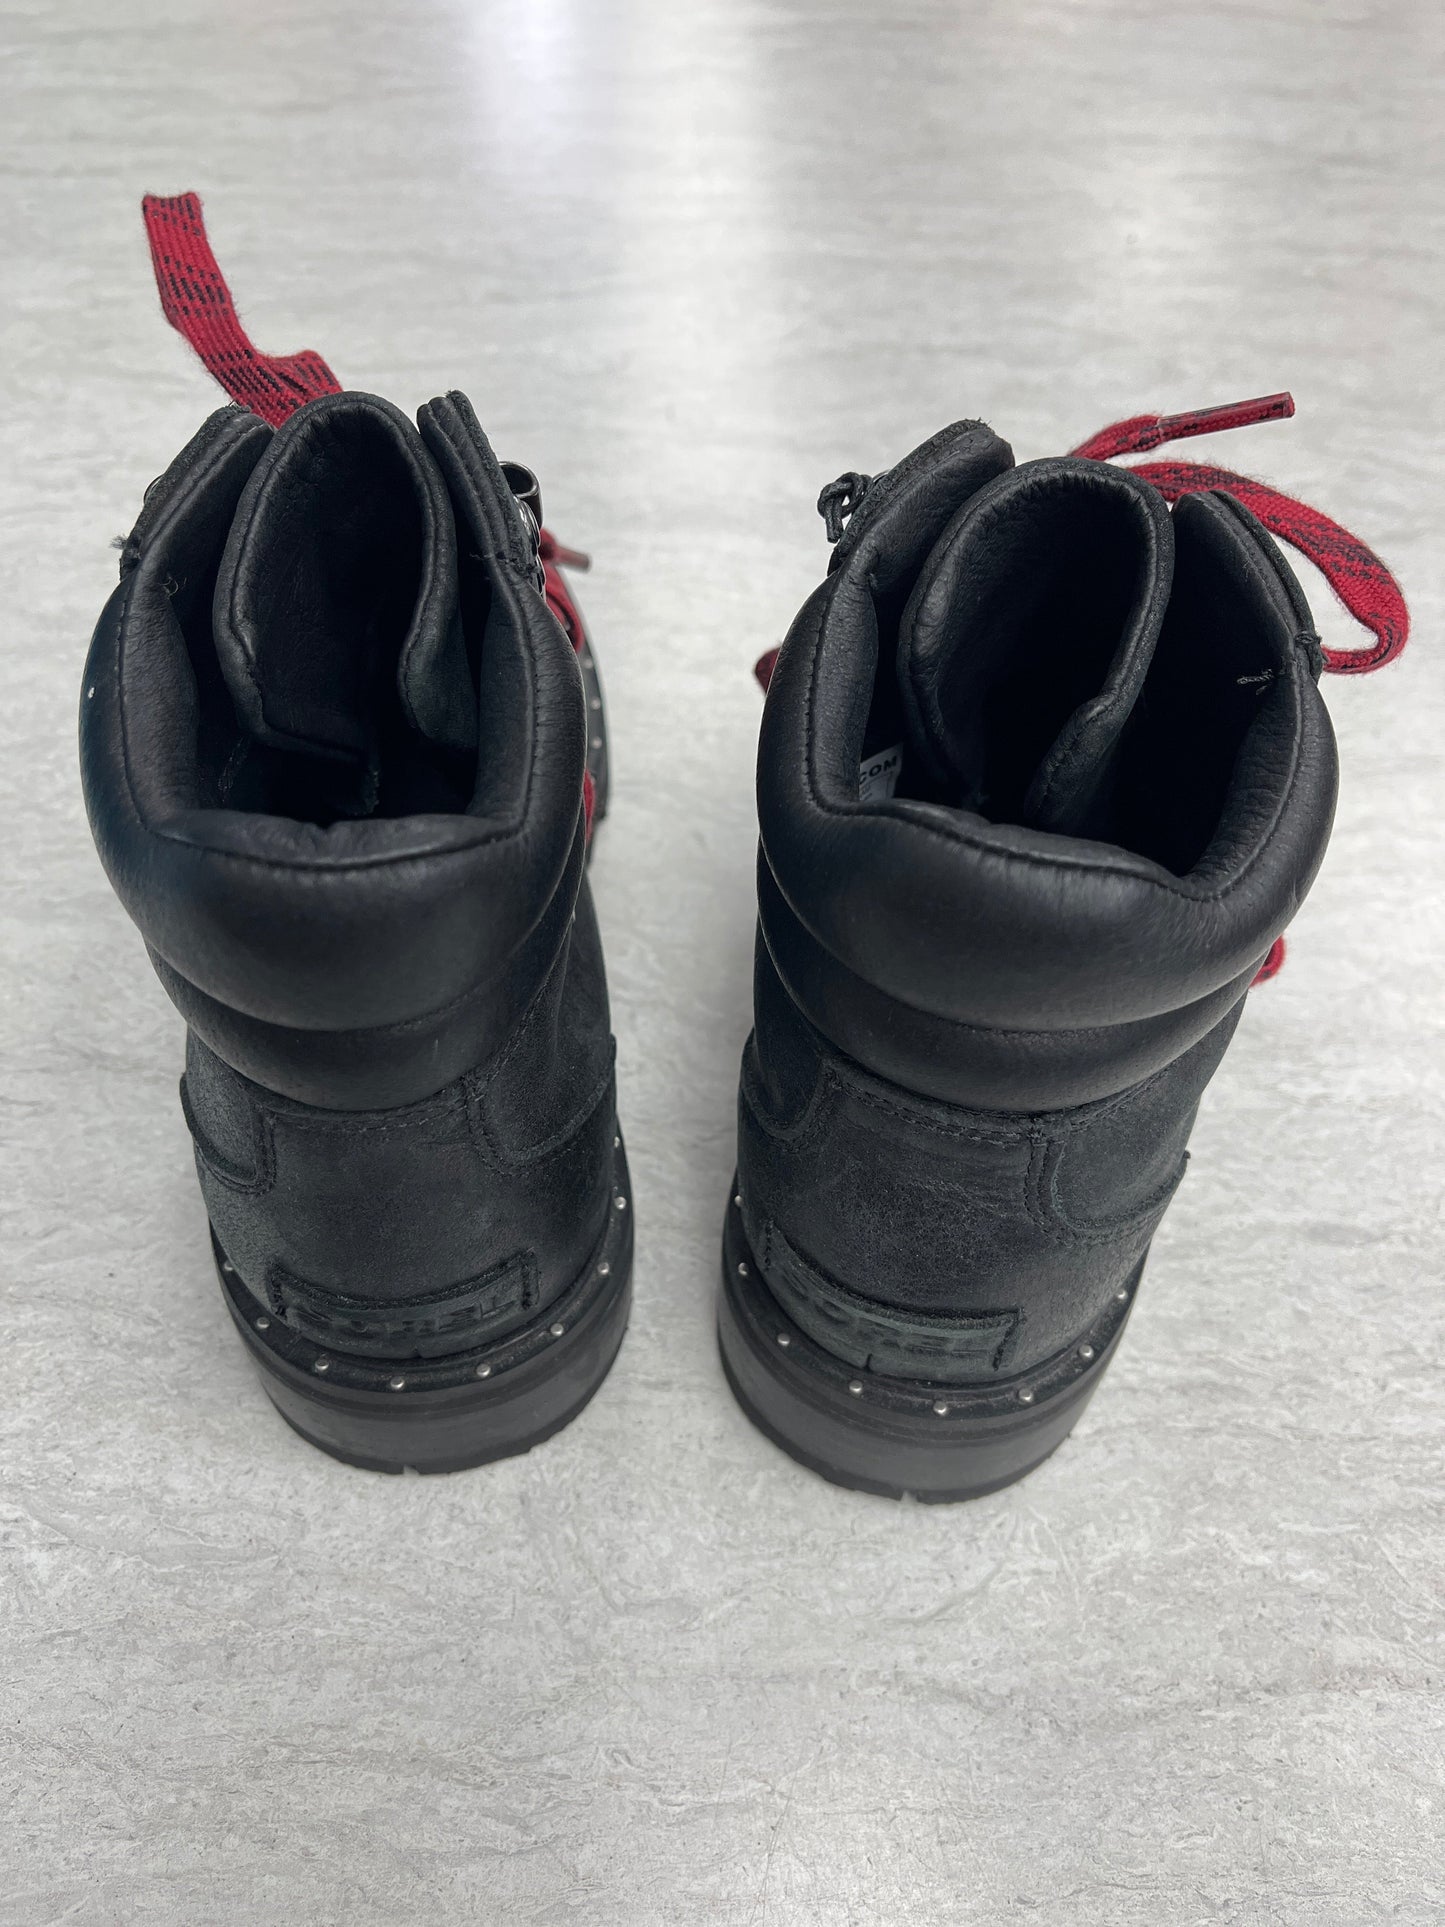 Black Boots Ankle Heels Sorel, Size 9